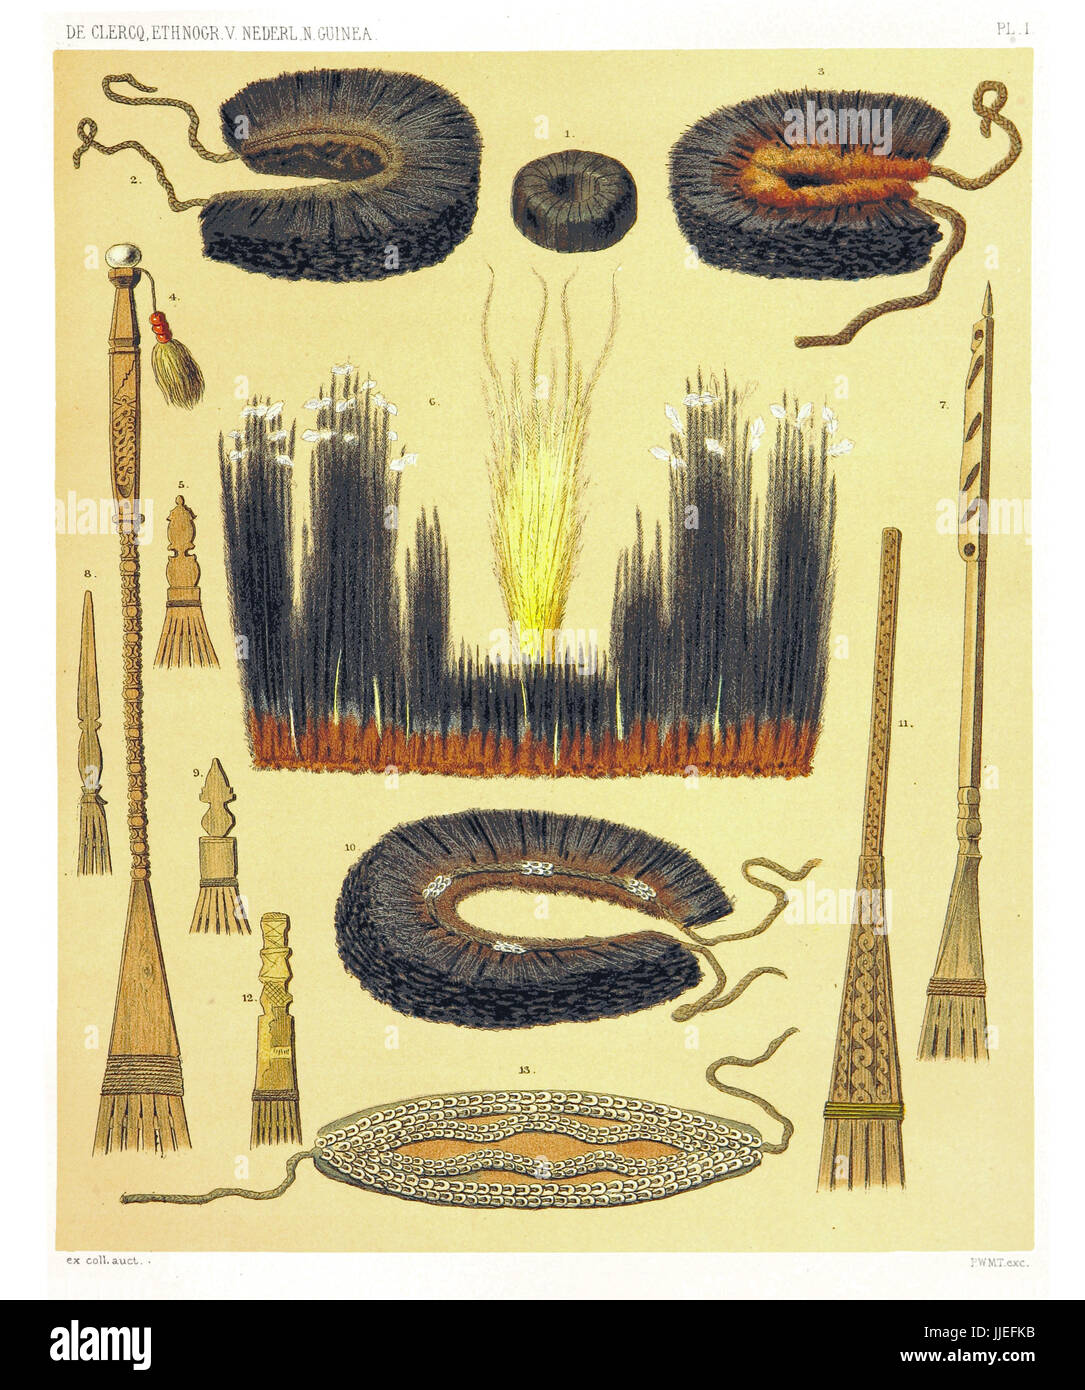 Ilustración de objetos étnicos desde el oeste y norte de la costa de Nueva Guinea Holandesa. Por F.S.A. De Clercq y J.D.E. Schmeltz, Leiden 1893 Foto de stock